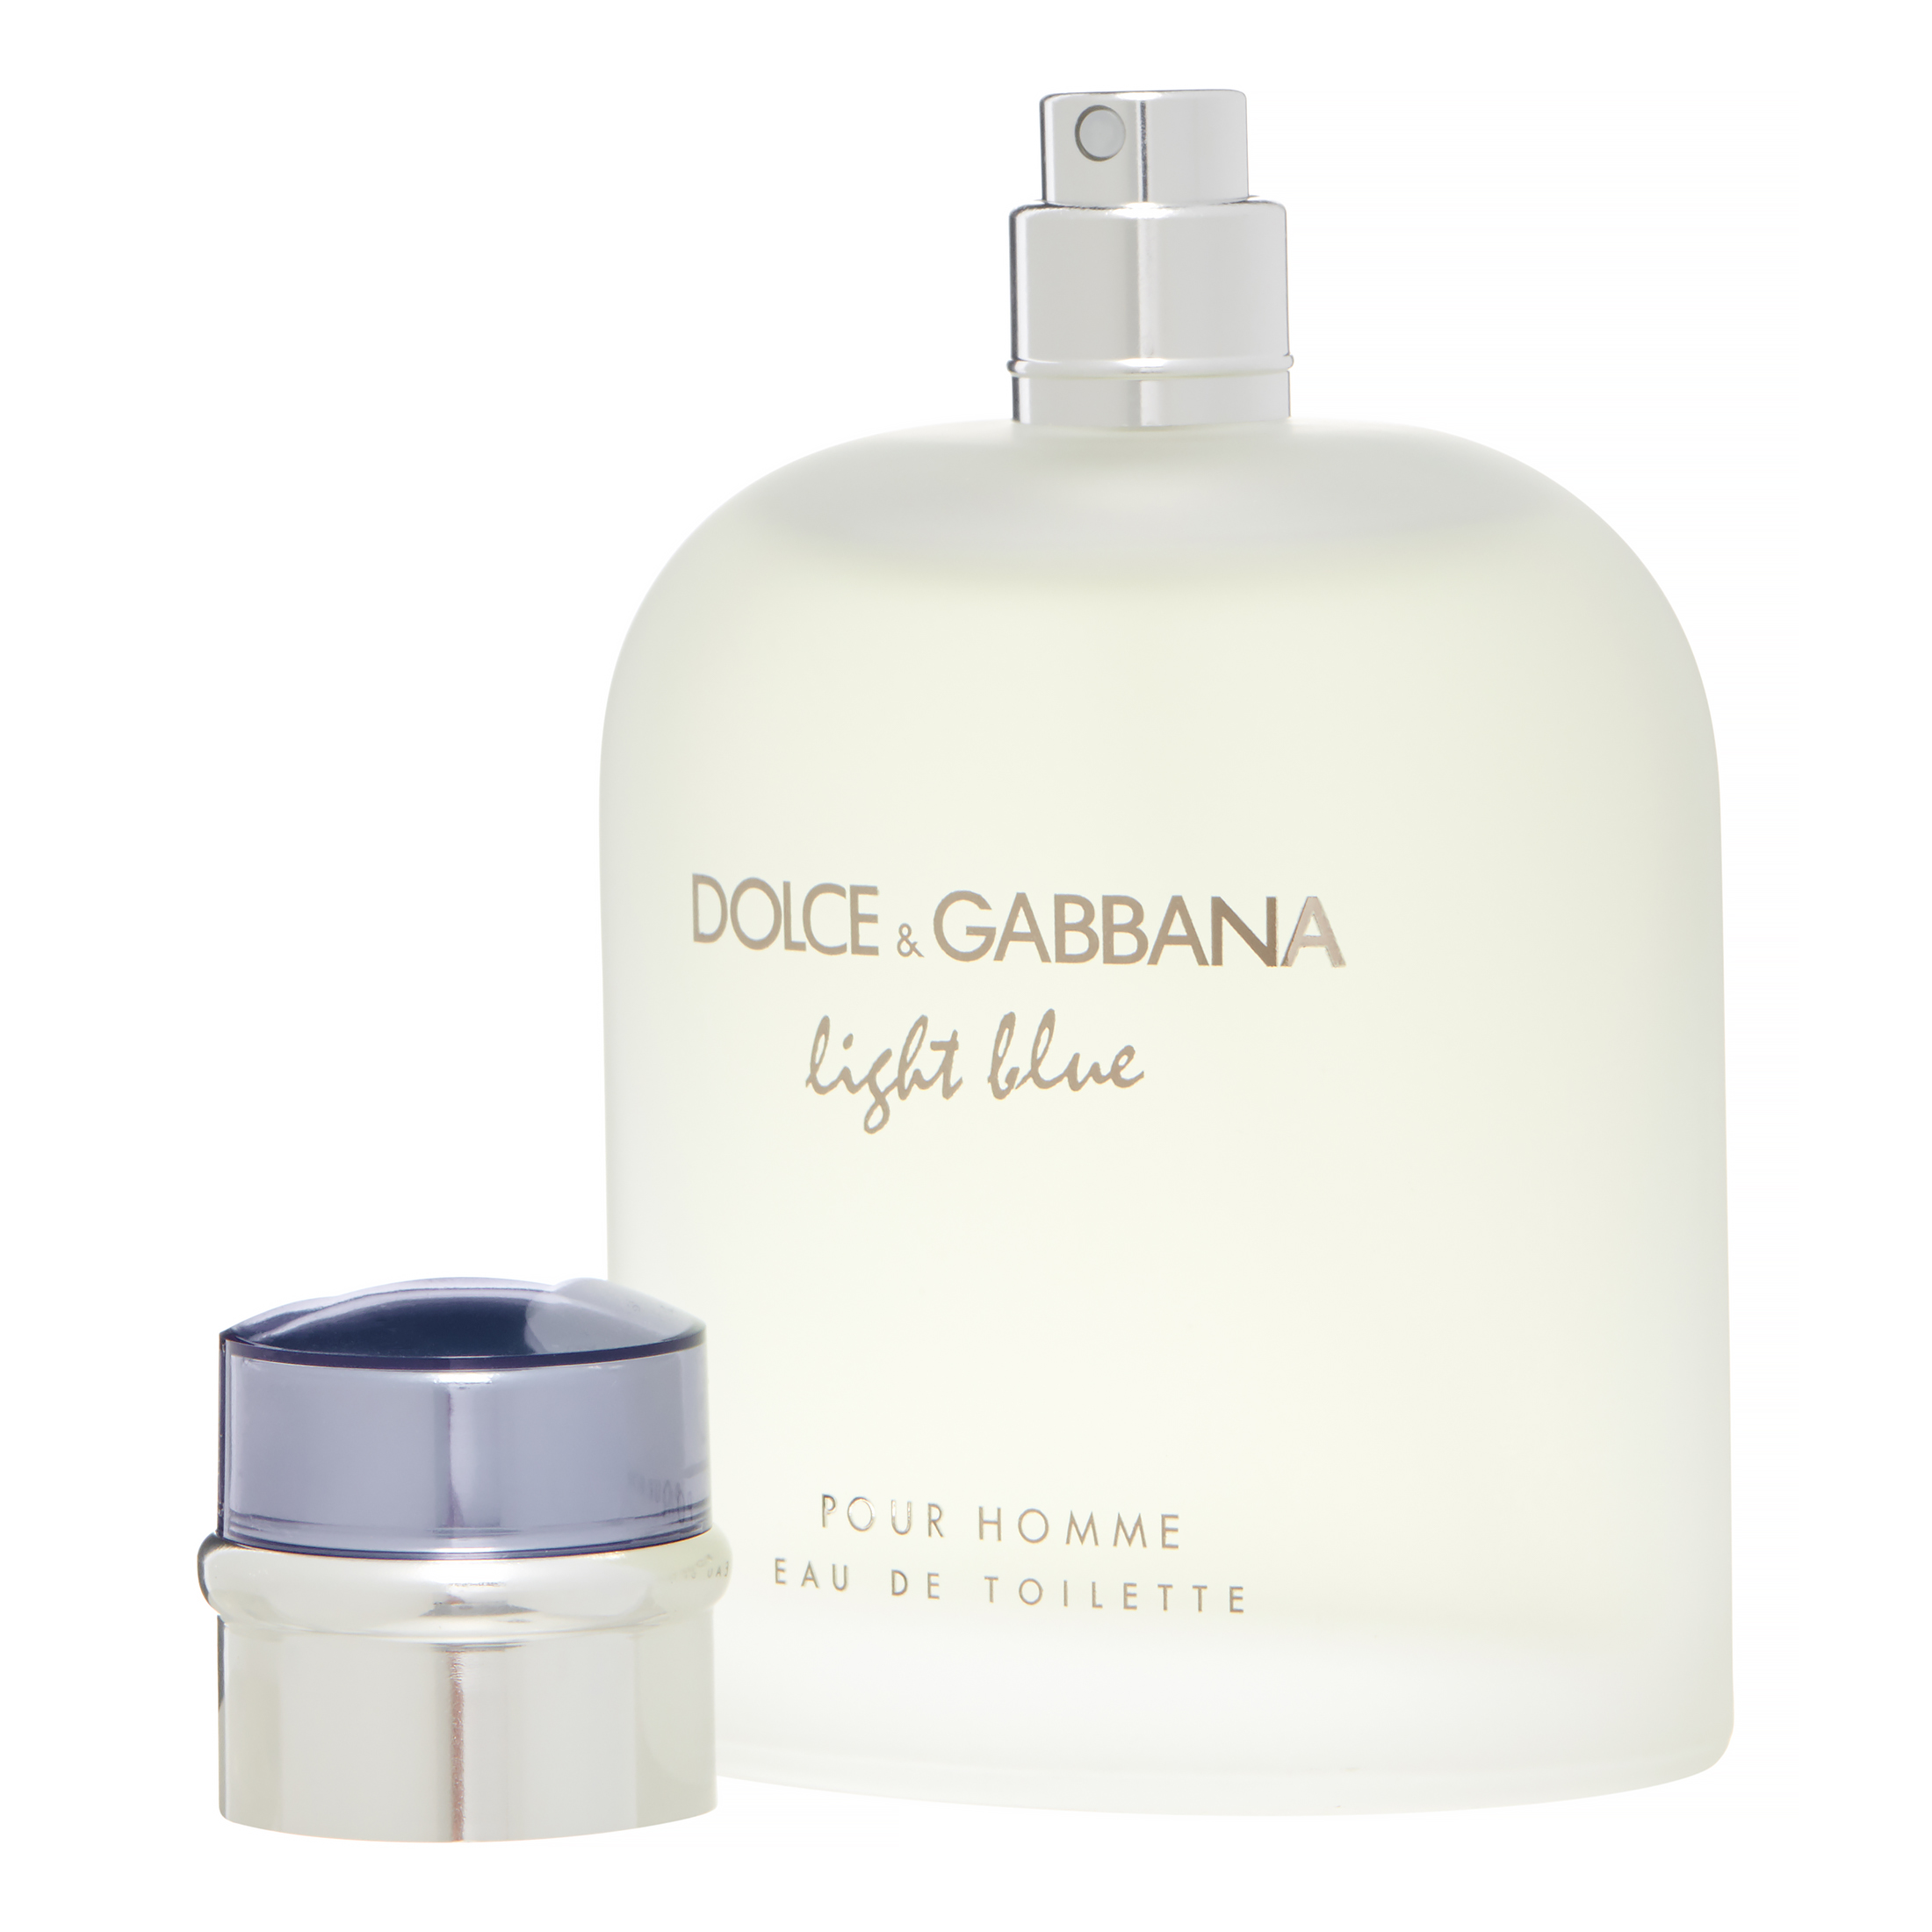 Dolce & Gabbana Light Blue Eau de Toilette, Cologne for Men, 4.2 Oz - image 2 of 6